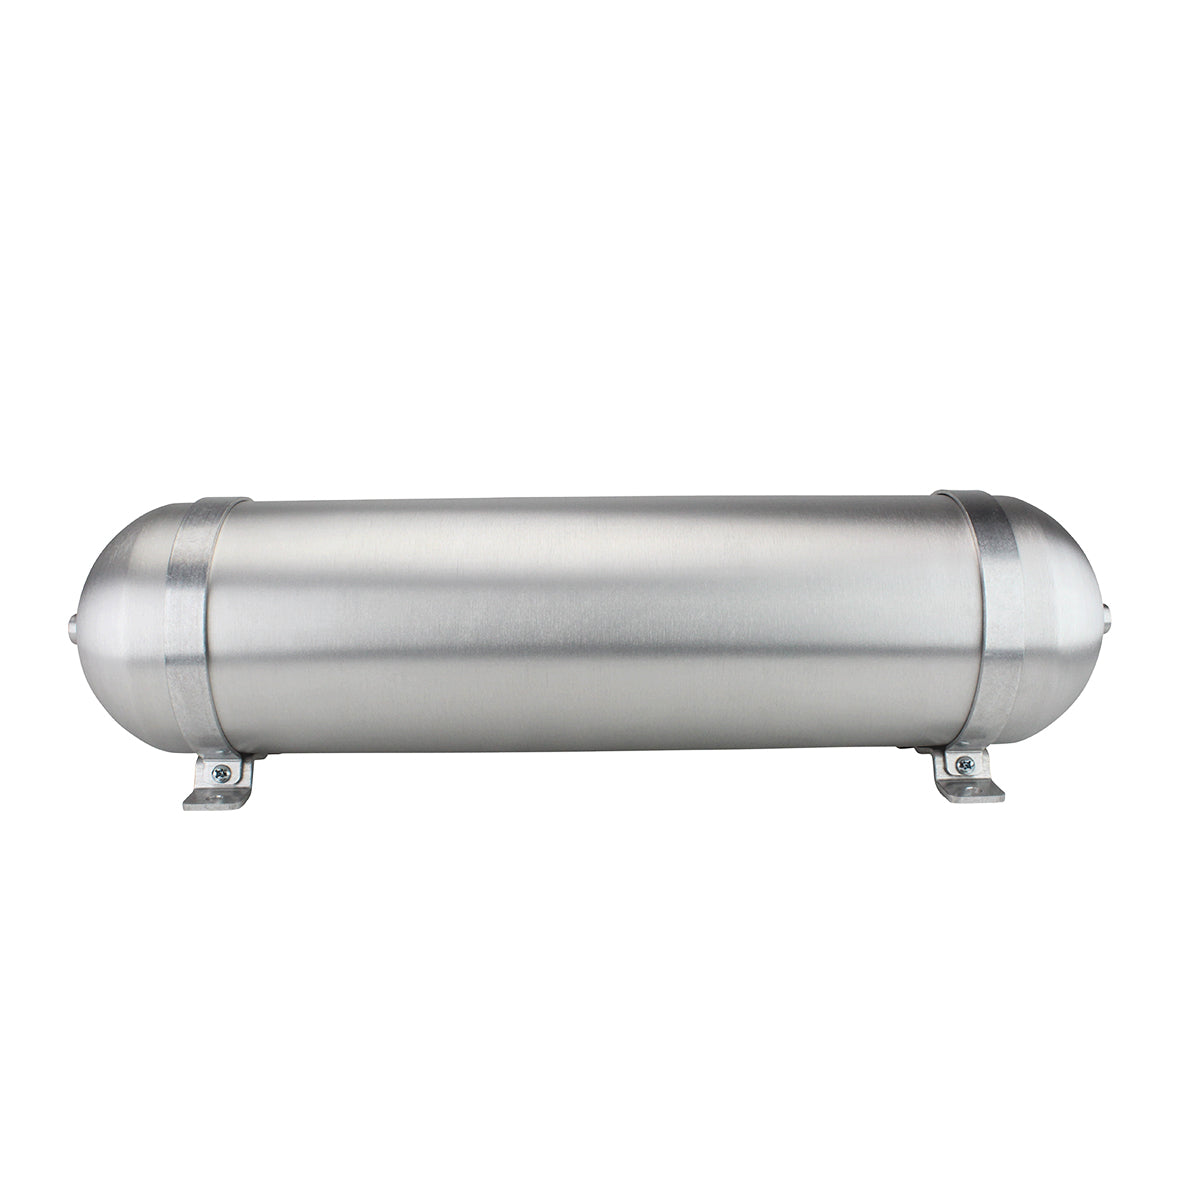 SA624025-01 Seamless Tanks Aluminum Air Tank 24" Length 6.625" Diameter, (5) 1/4" Ports, 200psi Rated, 2.89 Gallons